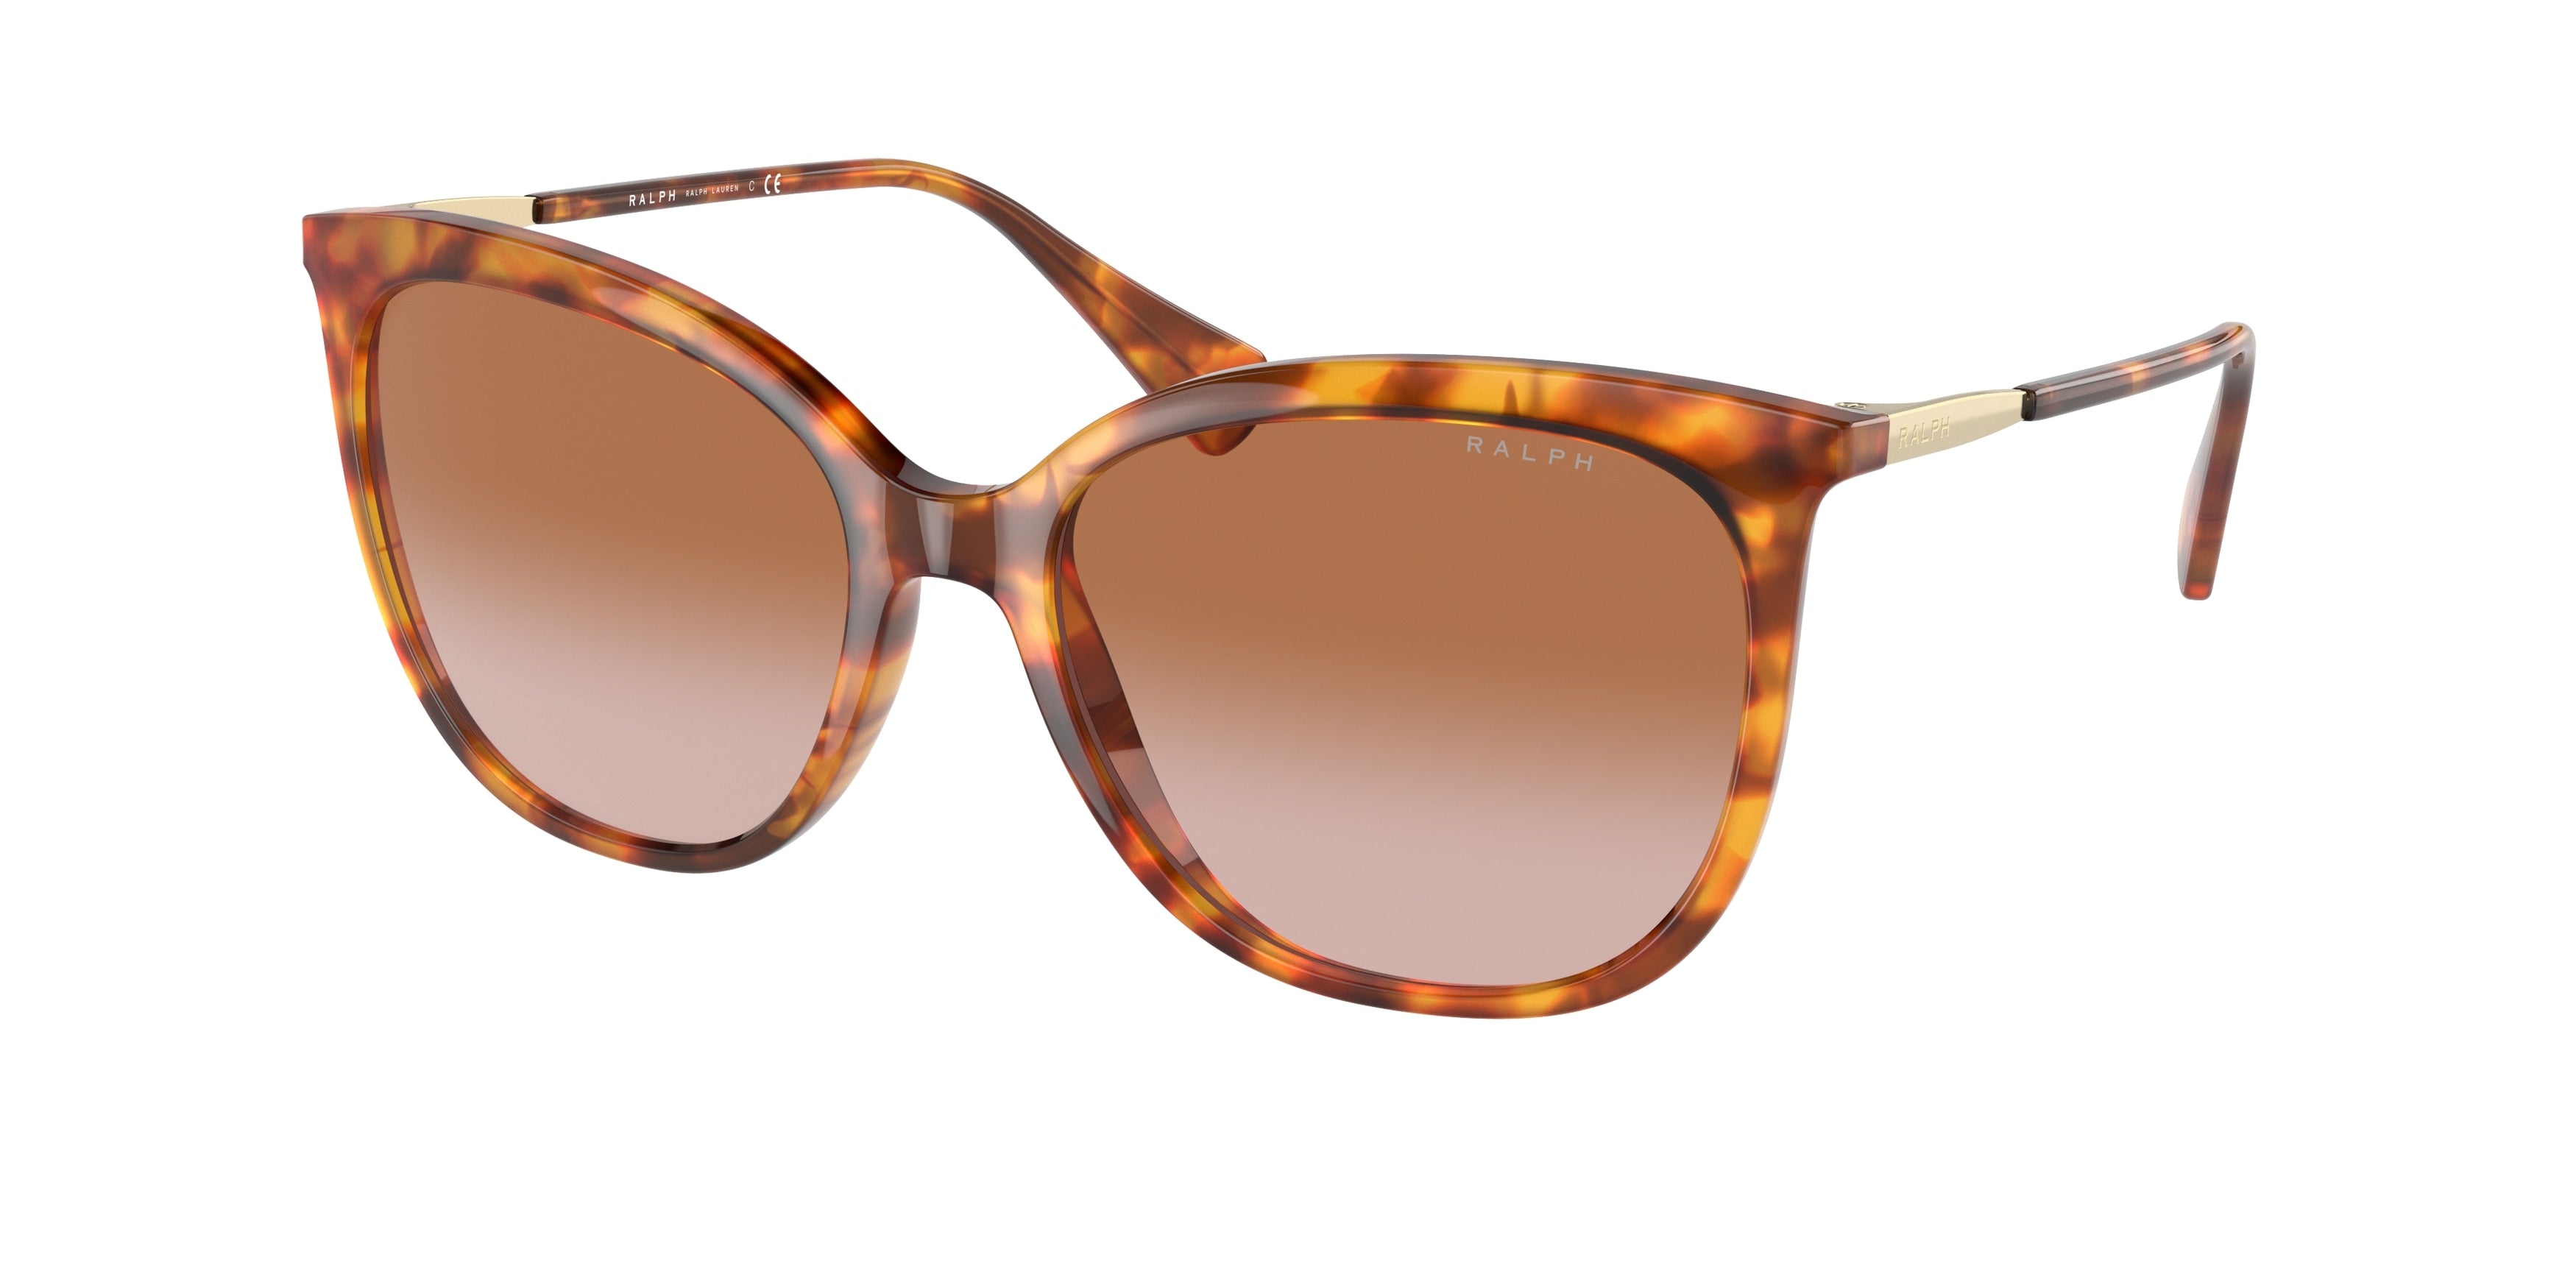 Ralph RA5248 Butterfly Sunglasses